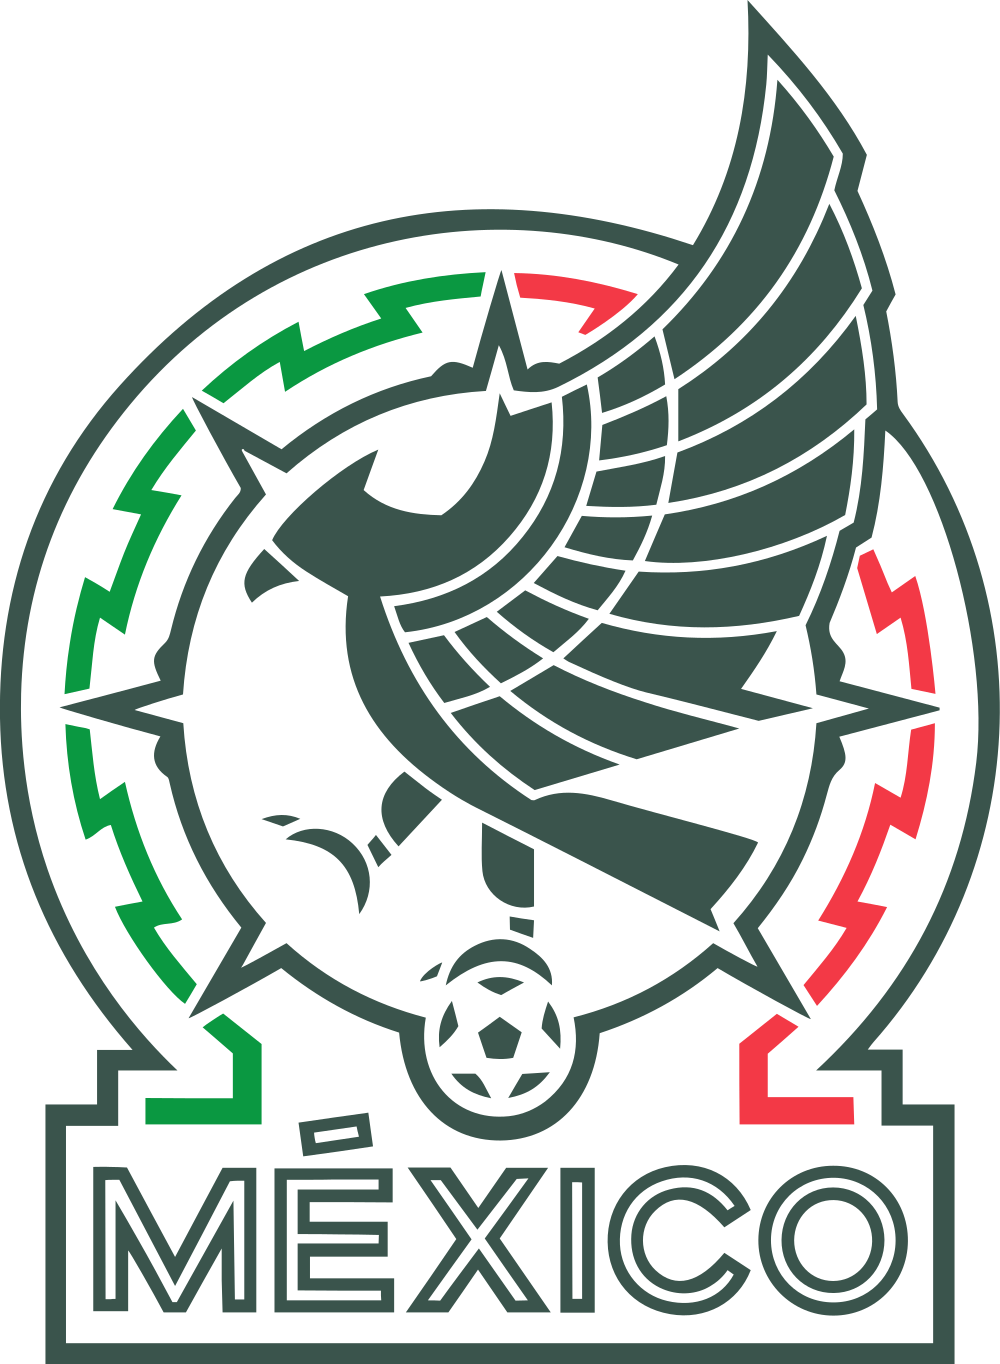 Mexico national football team logo png transparent